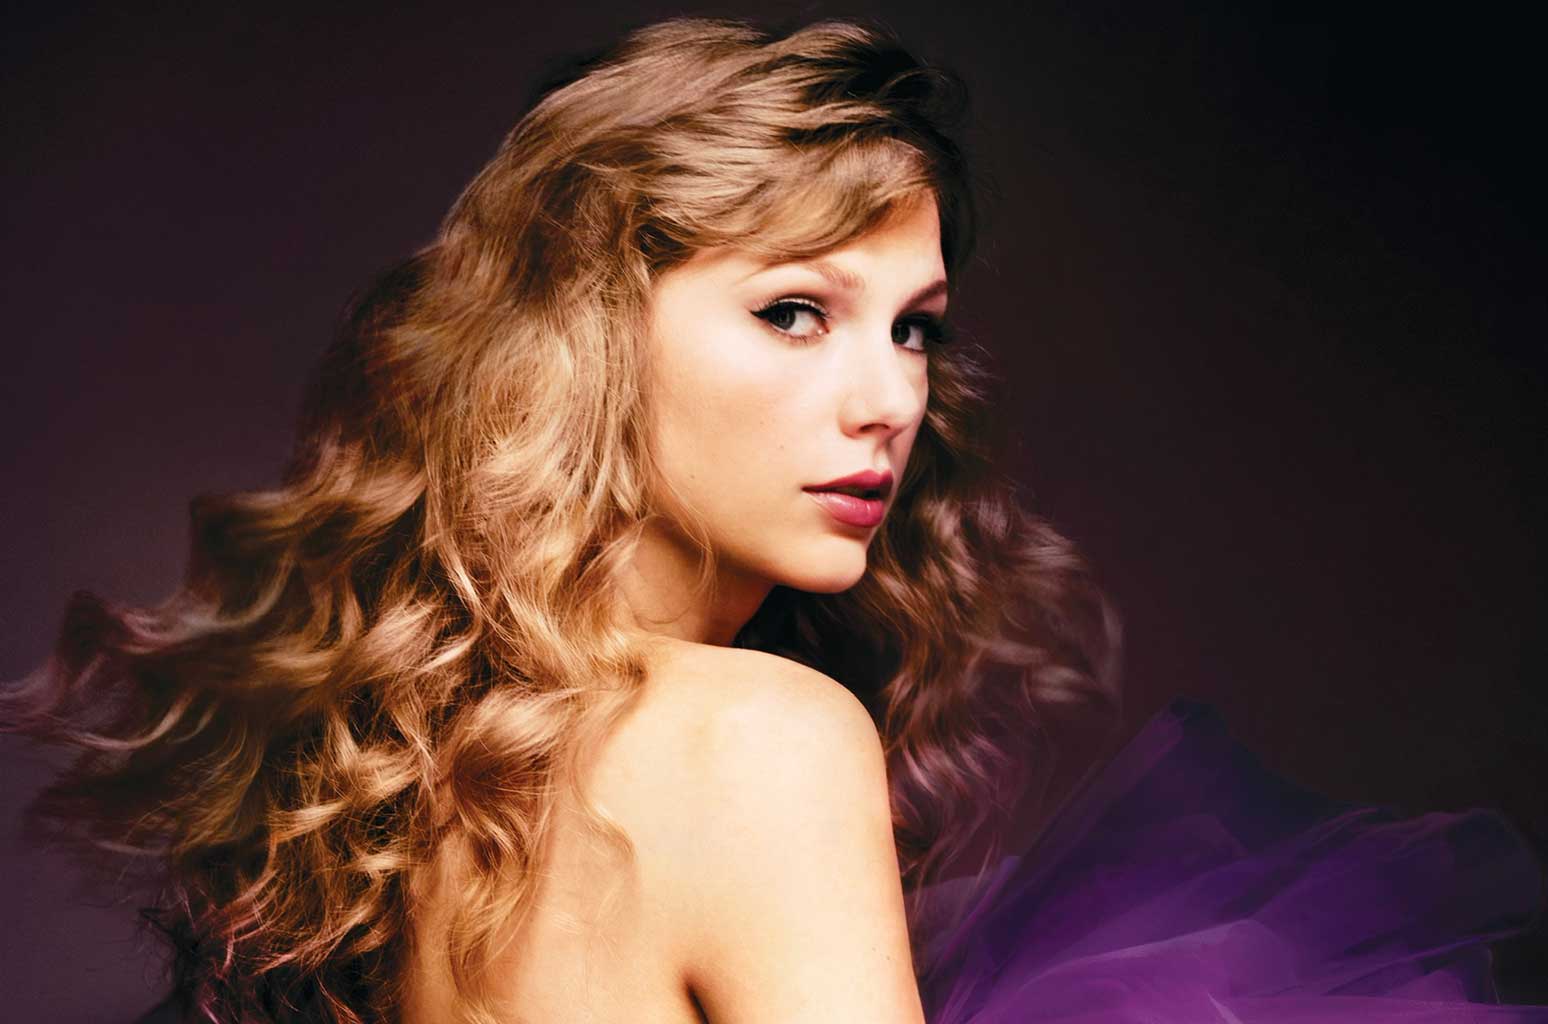 Taylor Swift lanza "Speak Now", su tercer álbum regrabado, con seis canciones nuevas